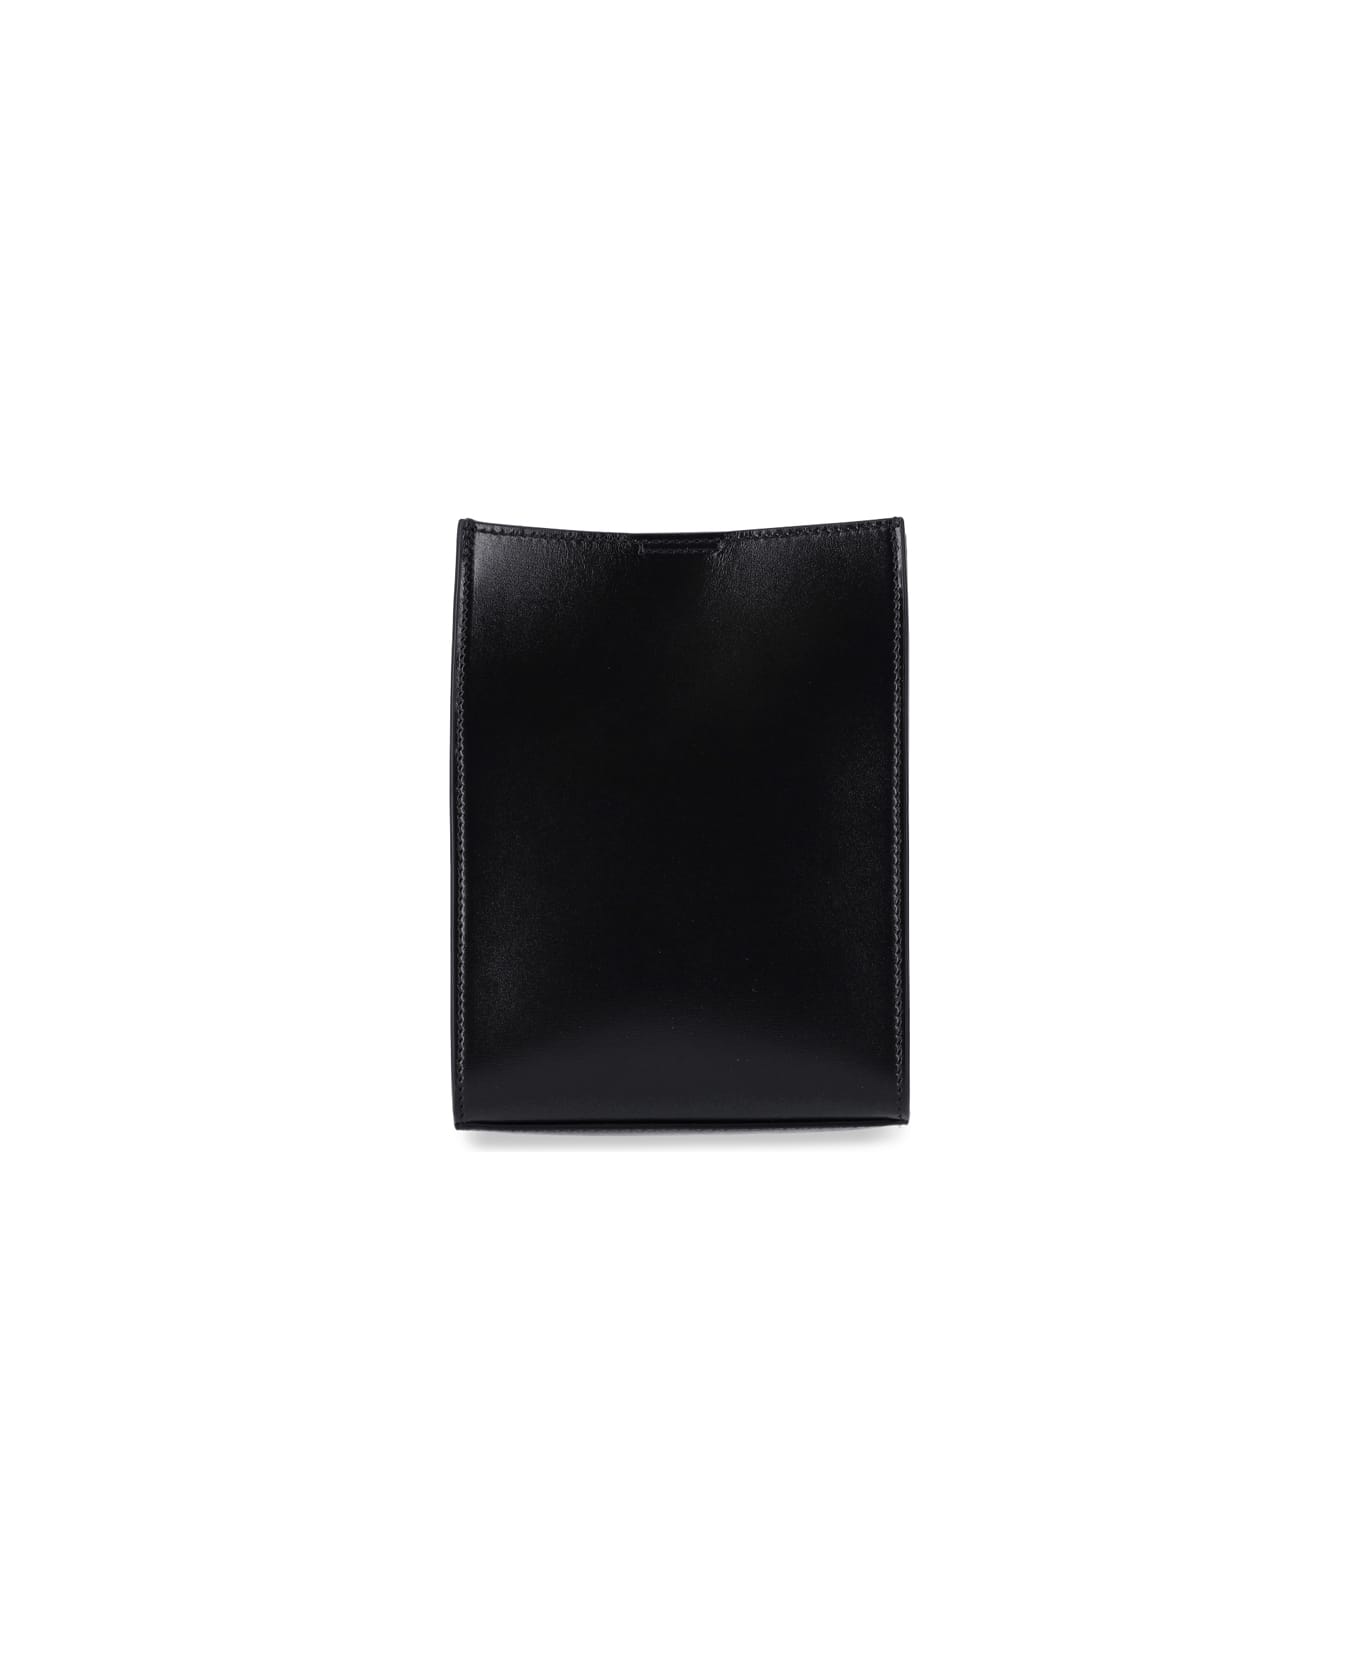 Jil Sander 'tangle' Small Shoulder Bag - BLACK クラッチバッグ